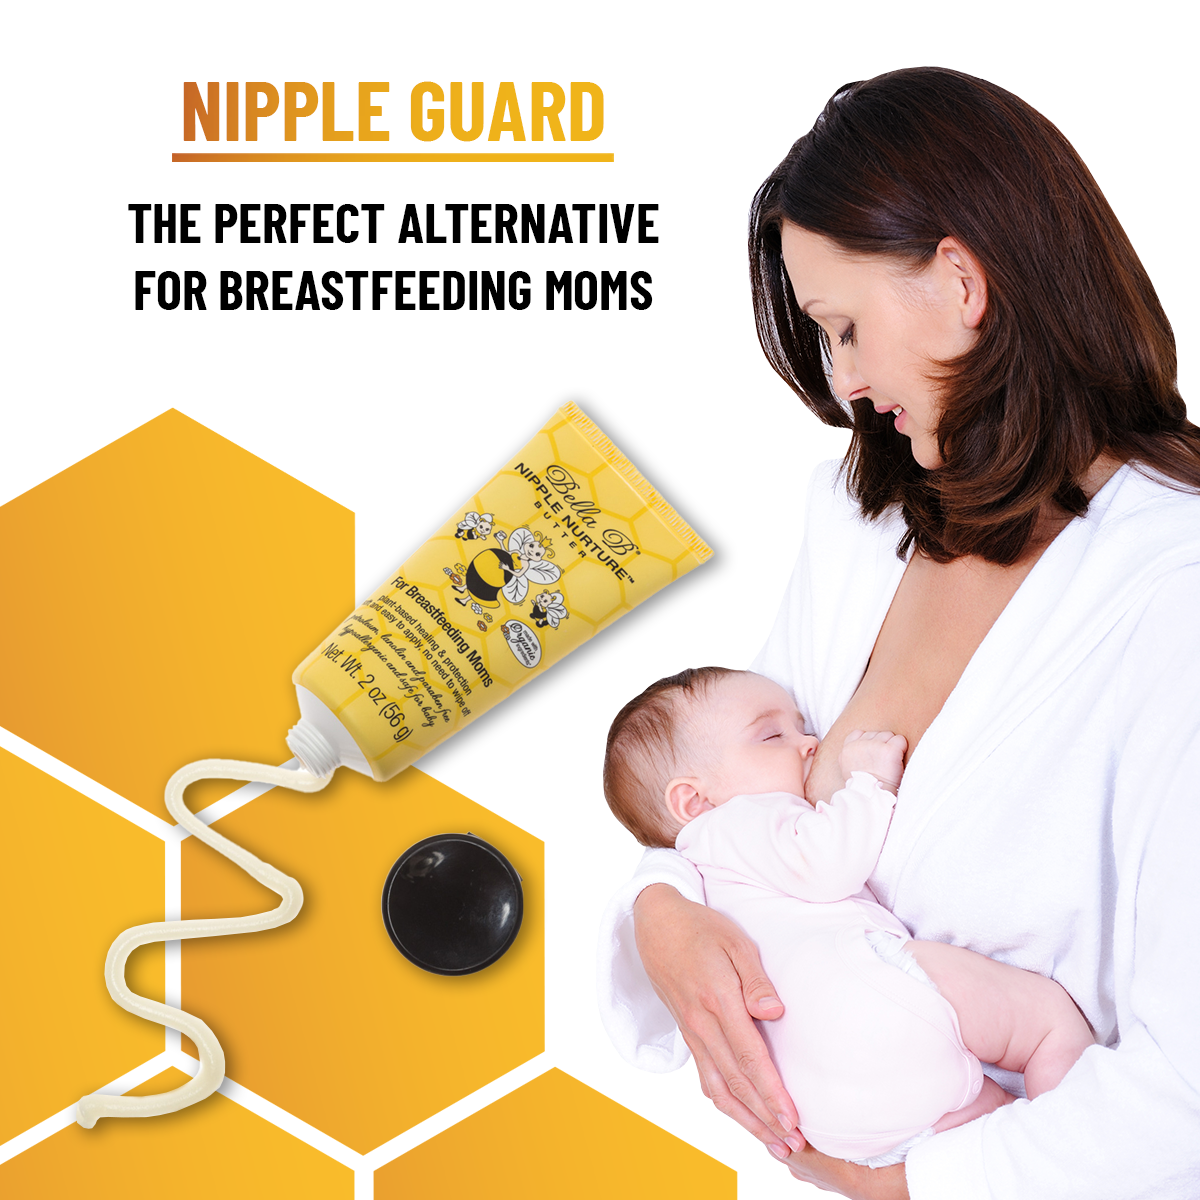 Bella B Bundle - Nipple Nurture Butter 2oz and Nipple Nurture Breast Wipes 3-Pack